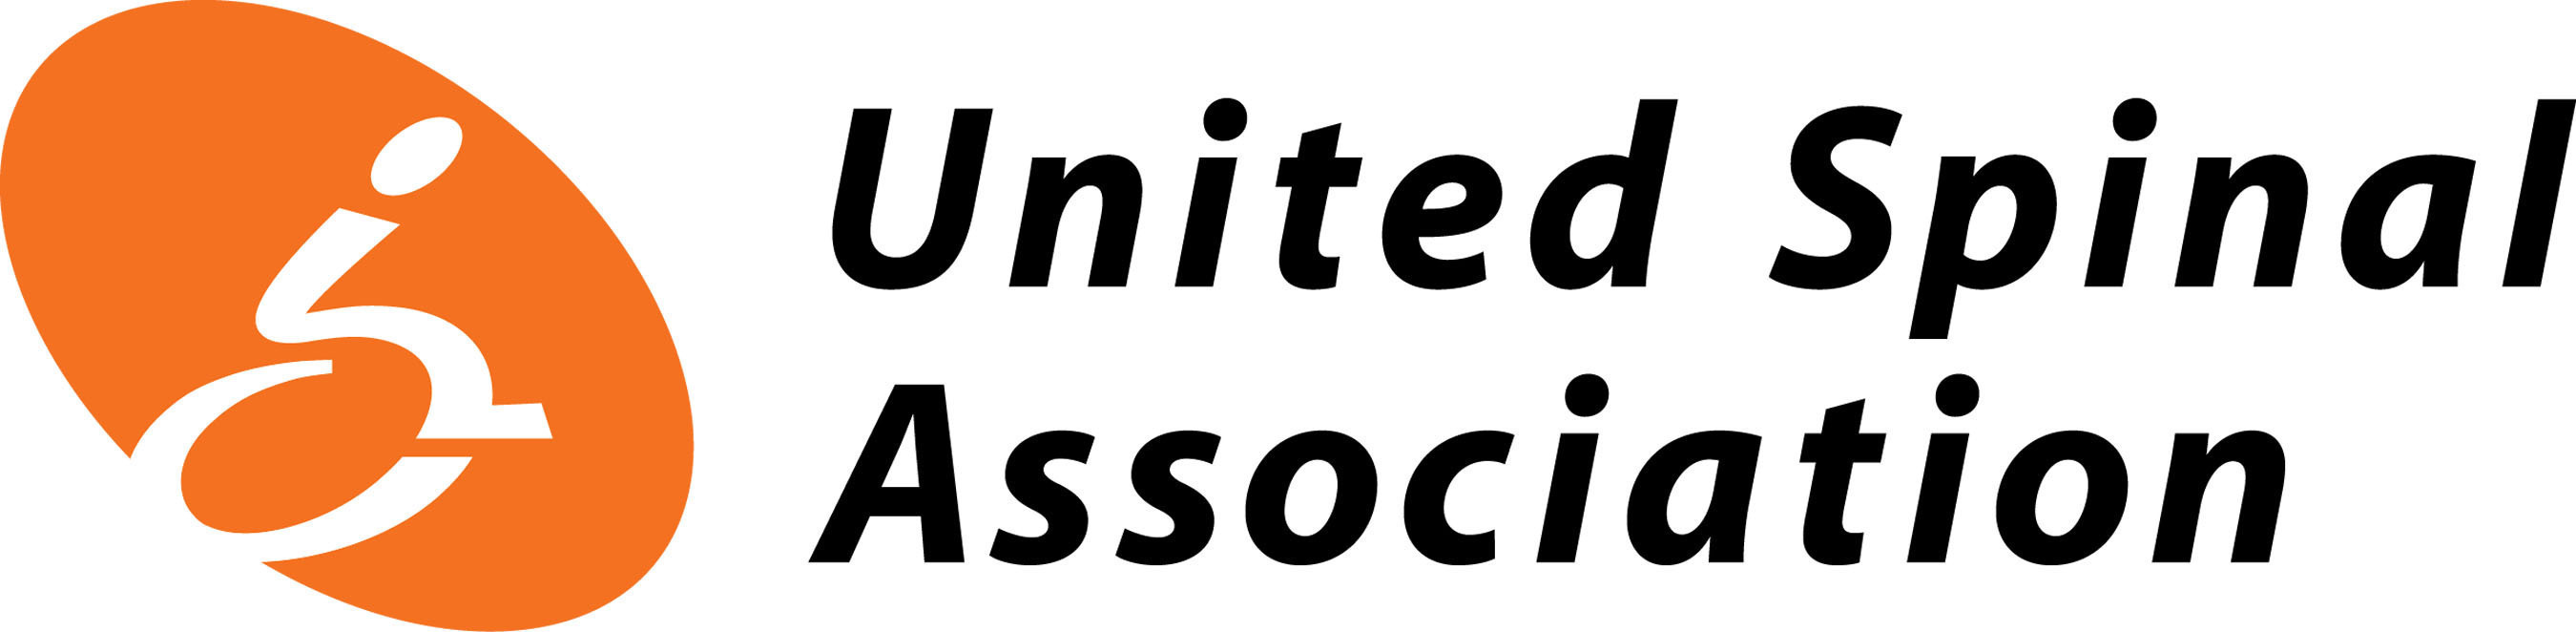 United Spinal Association. (PRNewsFoto/United Spinal Association) (PRNewsFoto/)